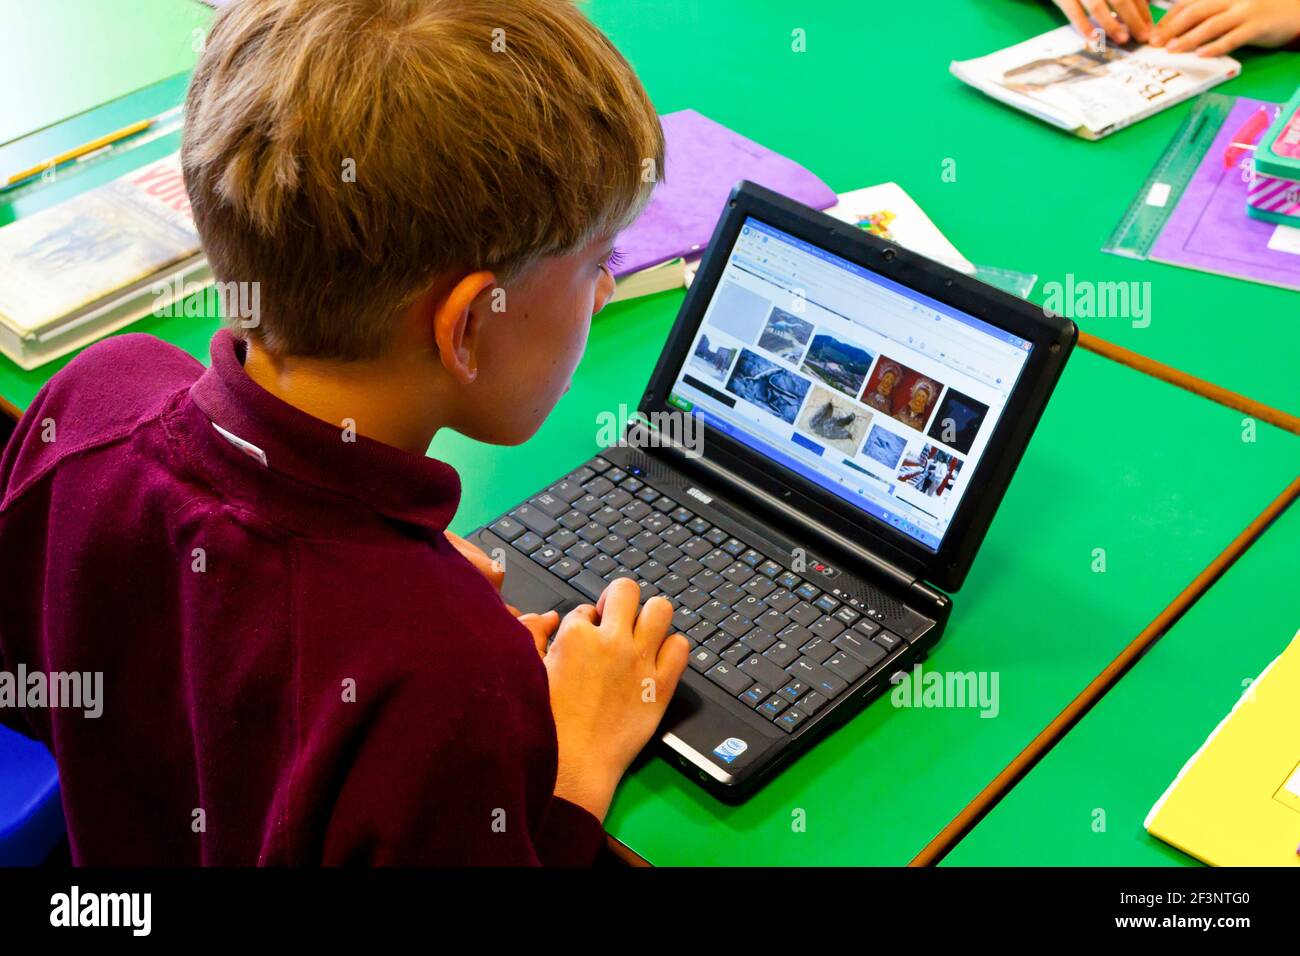 Grundschulkind, das während eines Unterrichtseinrichts einen Laptop verwendet. Stockfoto